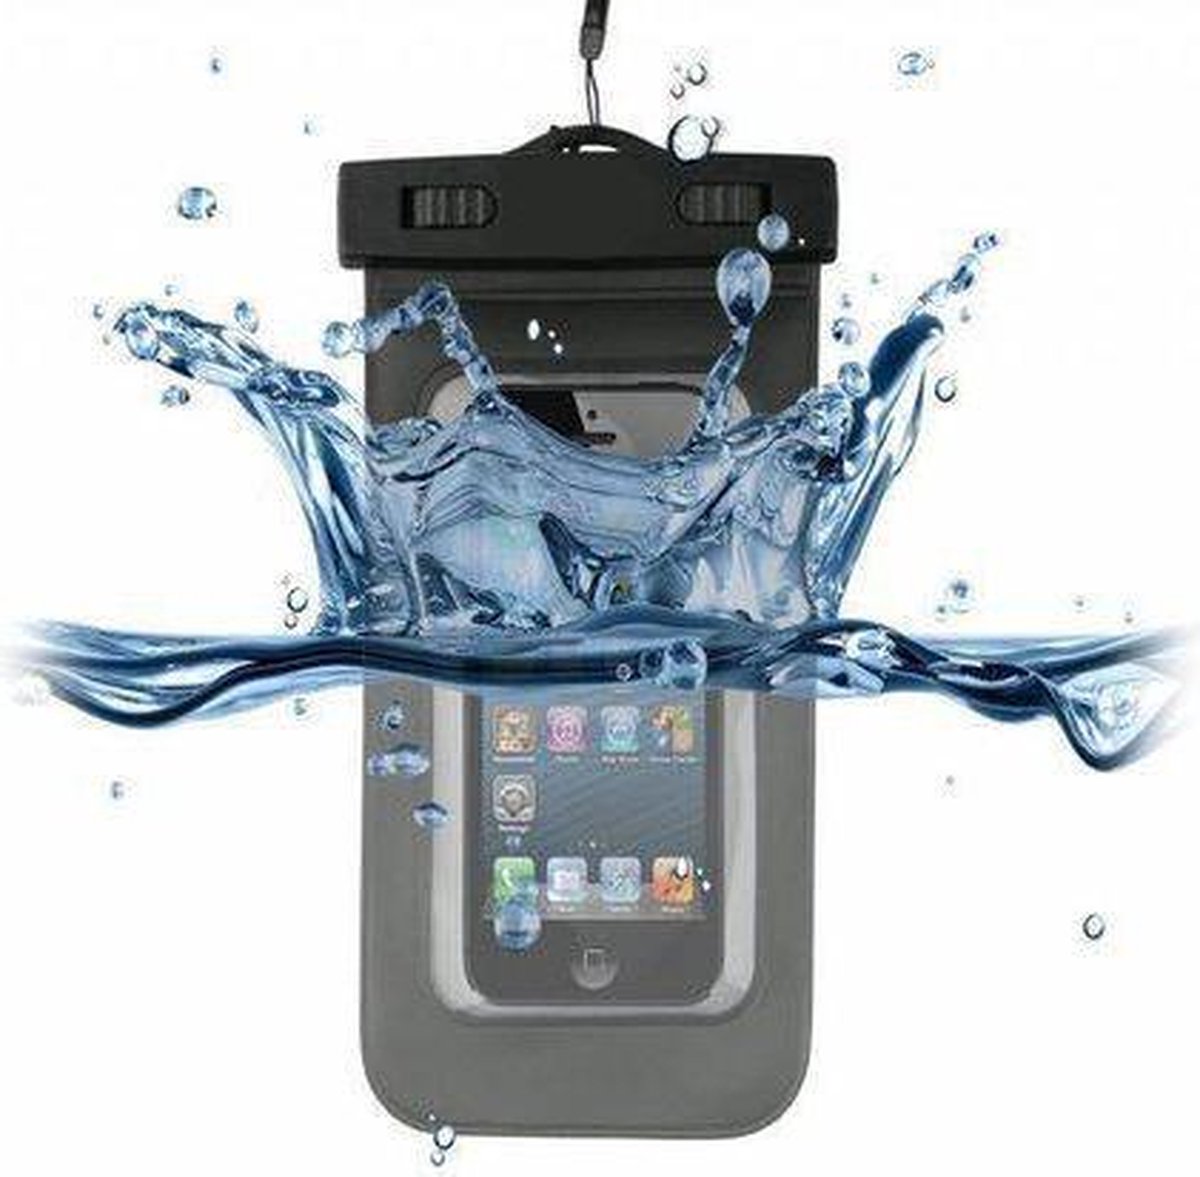 Lg G2 Mini Waterdichte Telefoon Hoes, Waterproof Case, Waterbestendig Etui, zwart , merk i12Cover